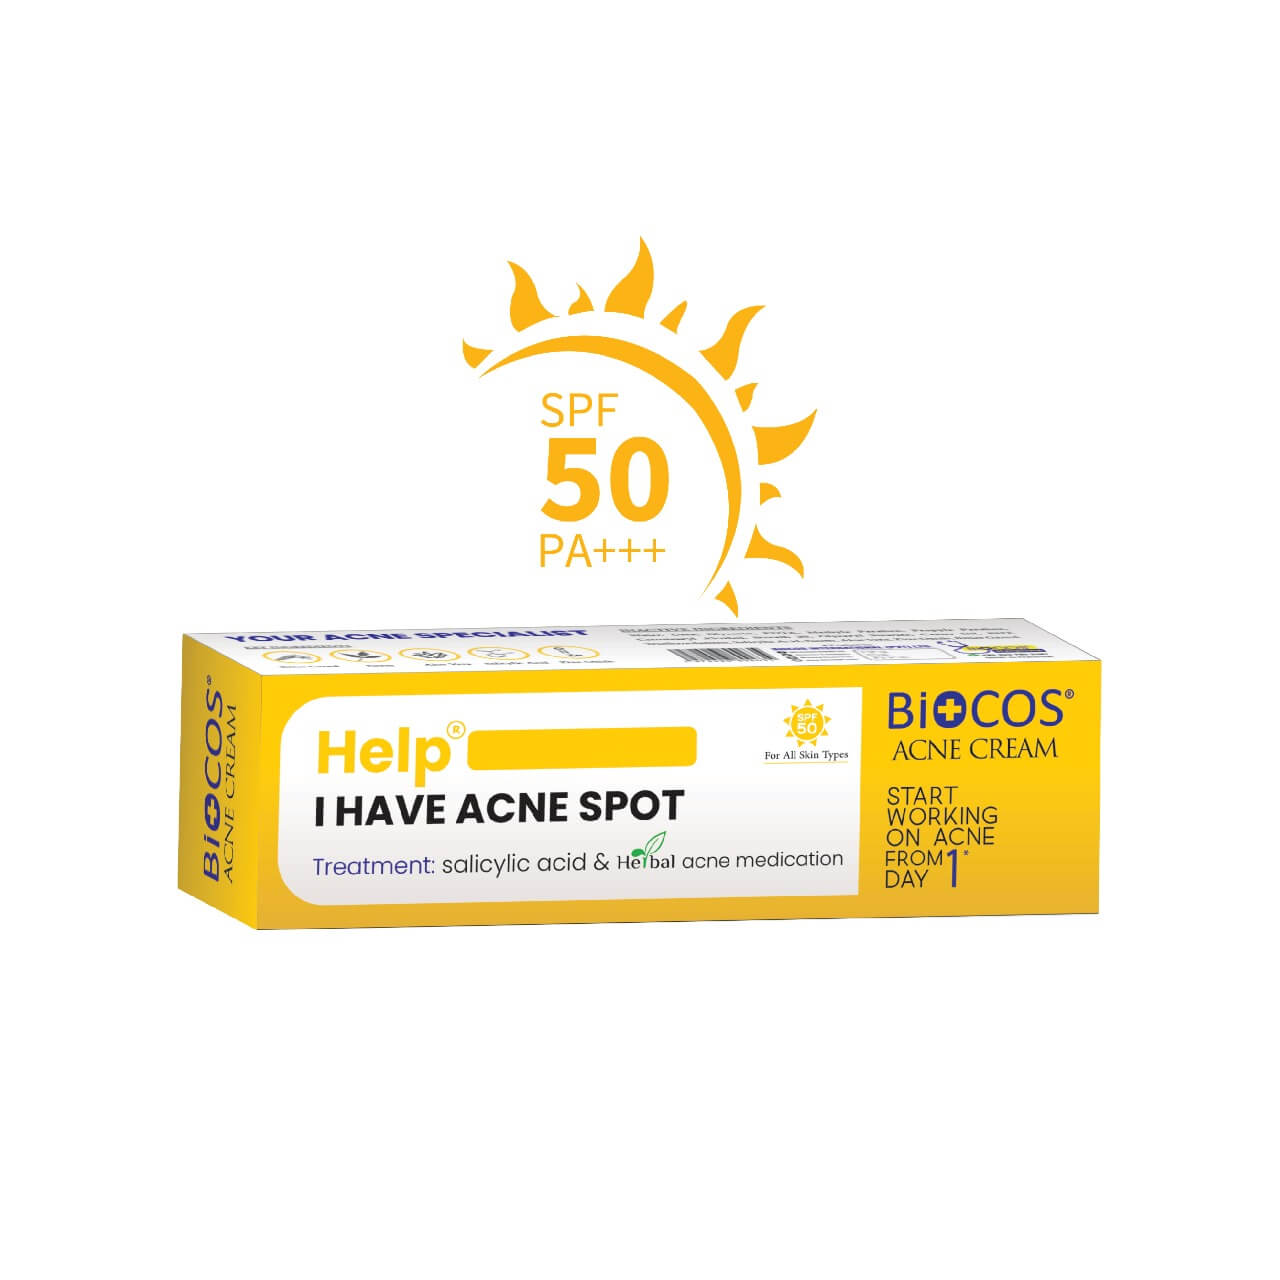 Biocos Anti Acne Cream